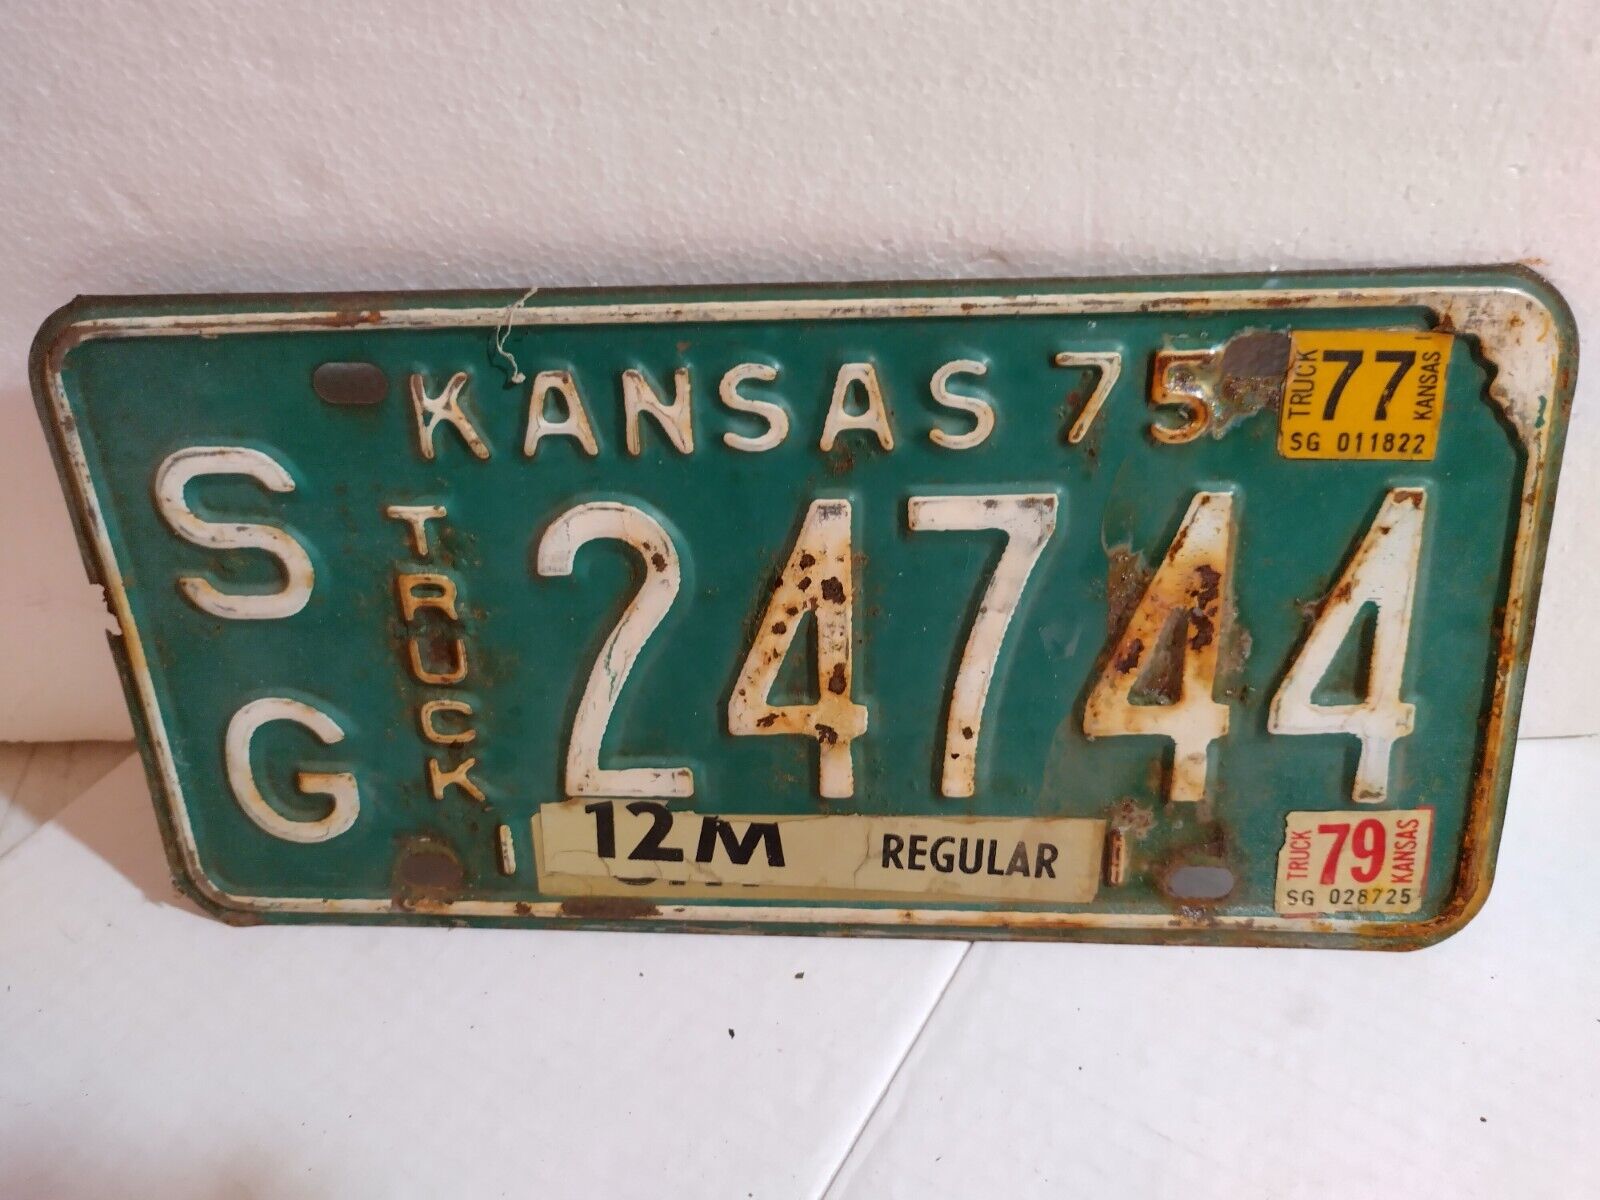 1975 White on Green Kansas Truck License Plate SG 24744